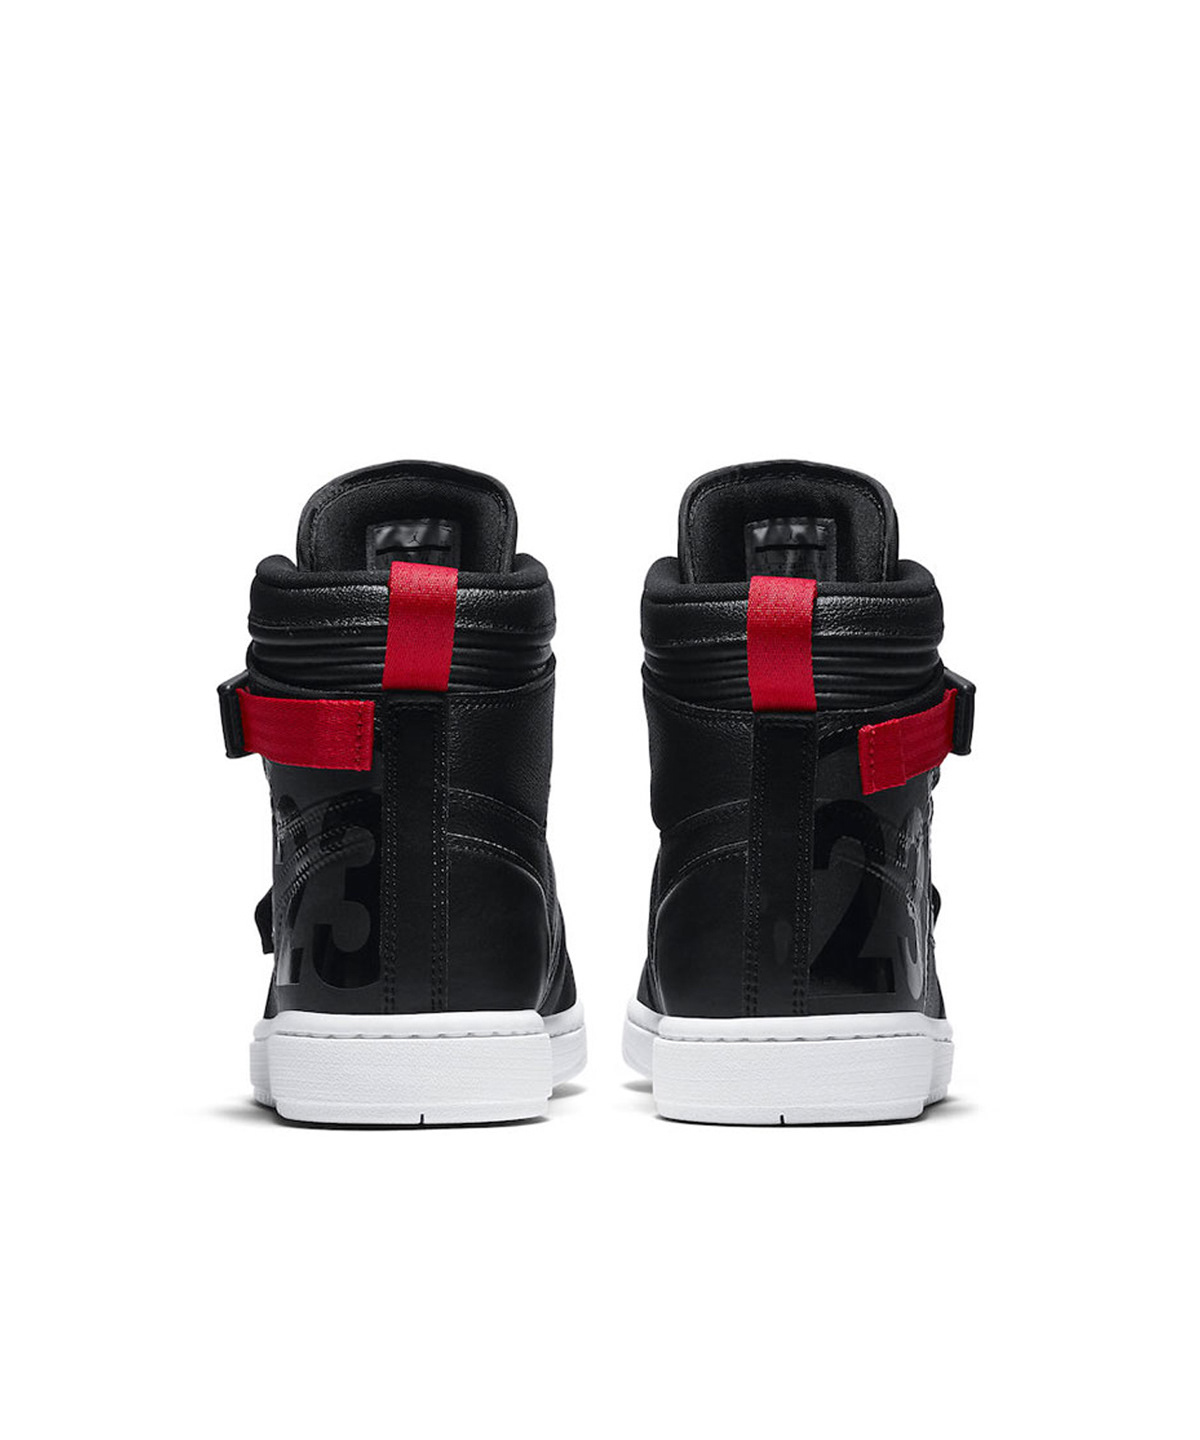 footwear jordan motorcycle Nike shoe sneaker